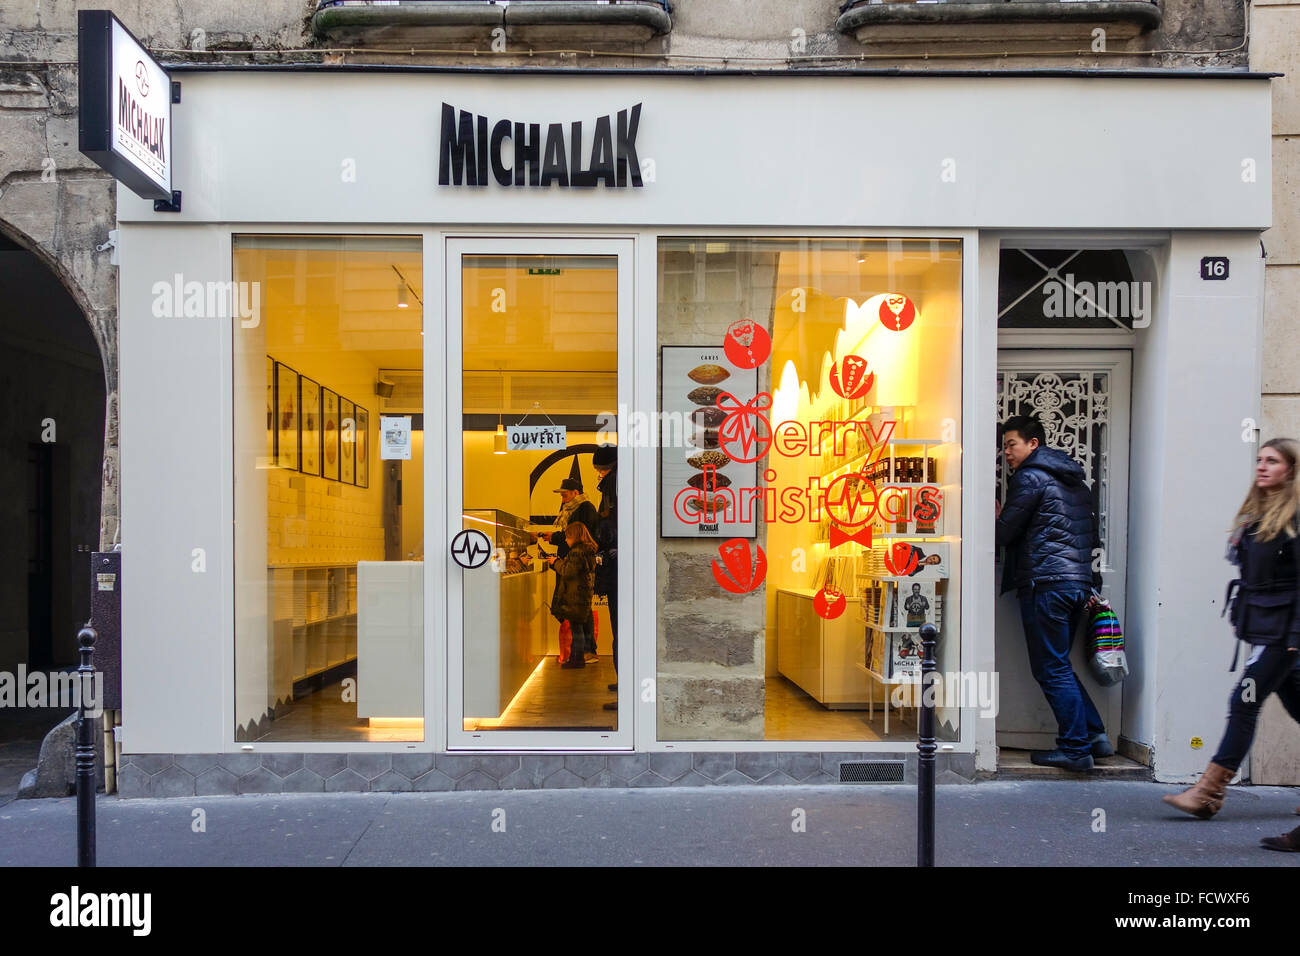 Michalak negozio di pasticceria, shop, nel quartiere del Marais, Parigi. Foto Stock